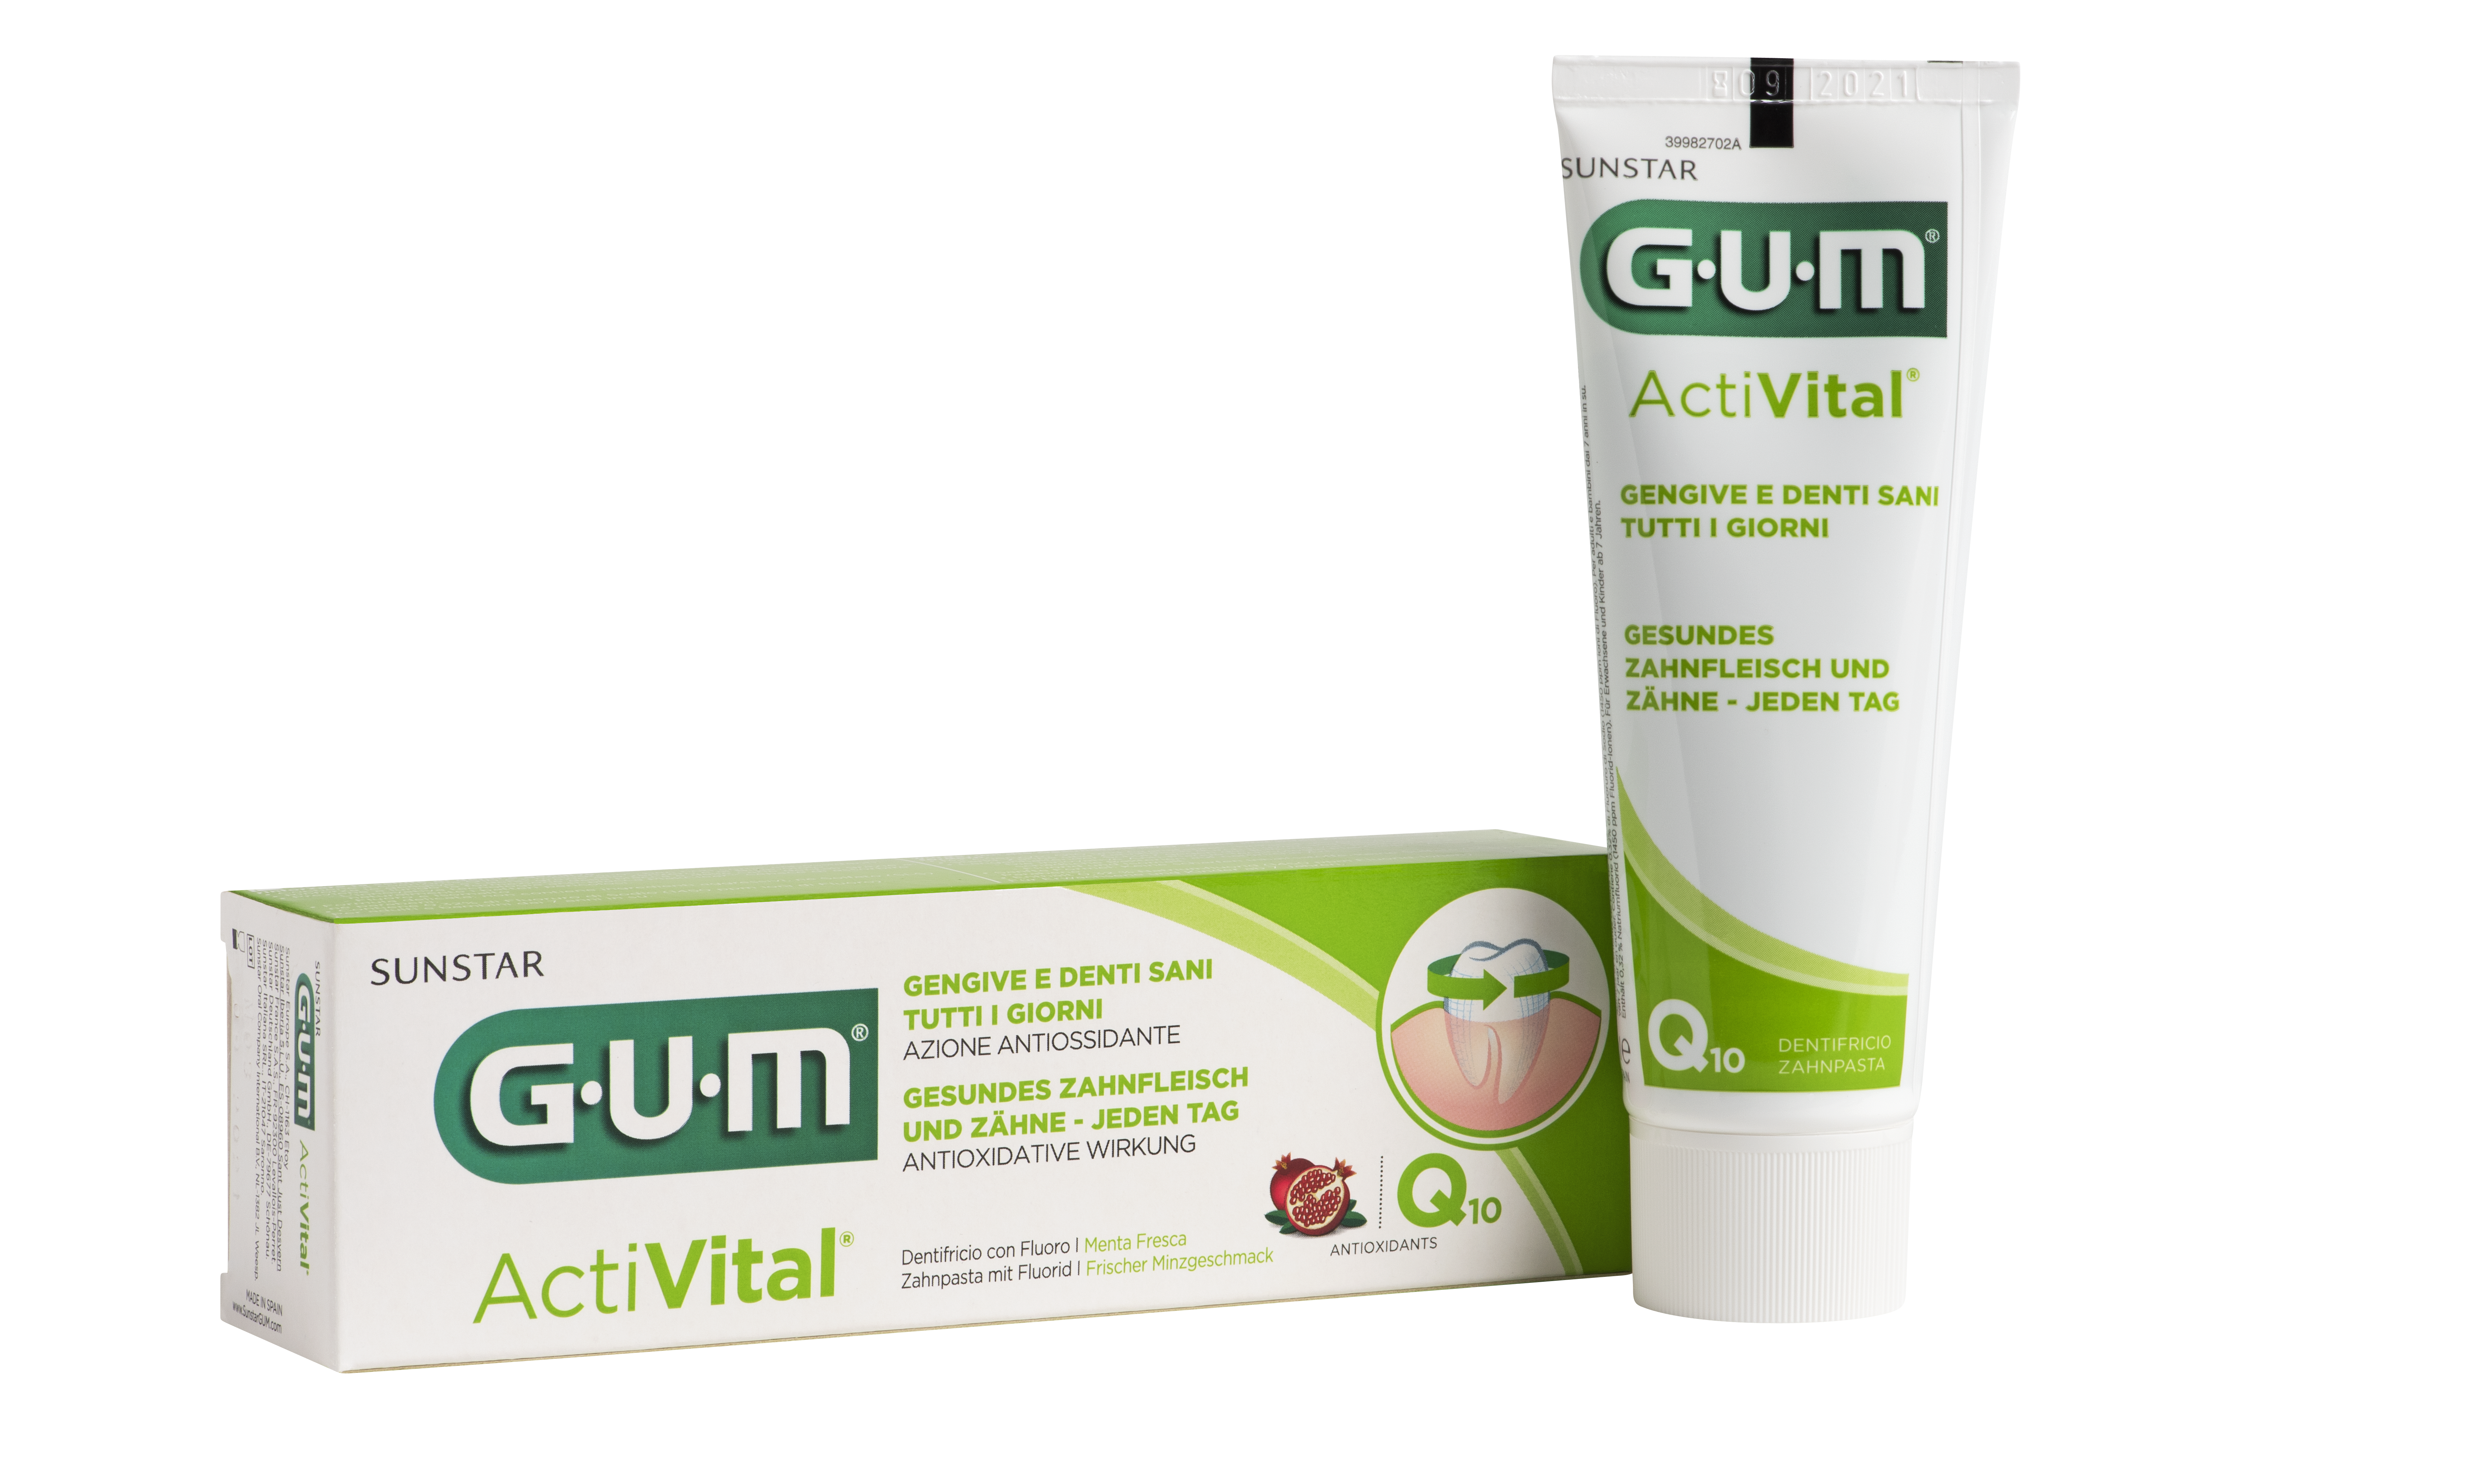 6050-DE-IT-GUM-Activital-Toothpaste-75ml-Box-Tube-copie